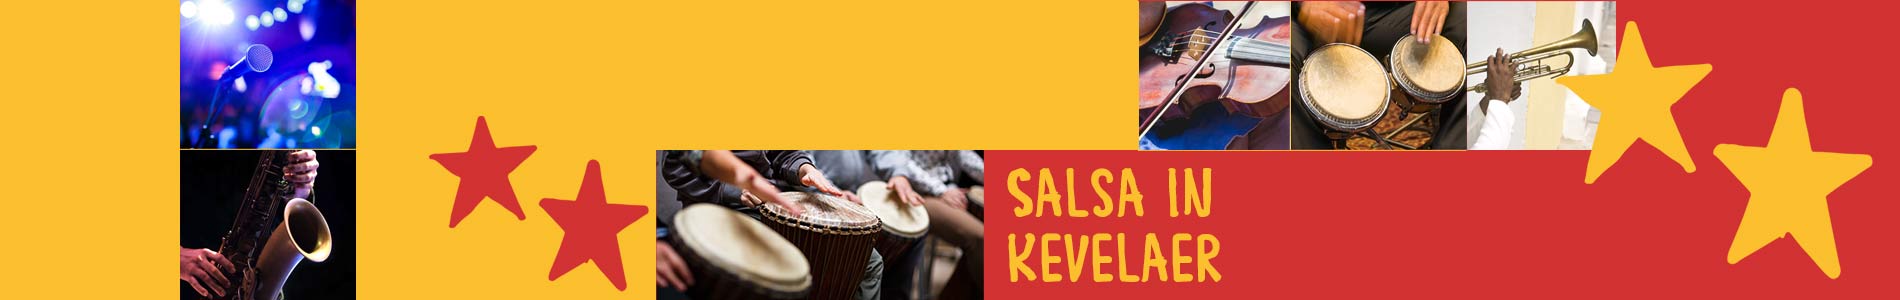 Salsa in Kevelaer – Salsa lernen und tanzen, Tanzkurse, Partys, Veranstaltungen